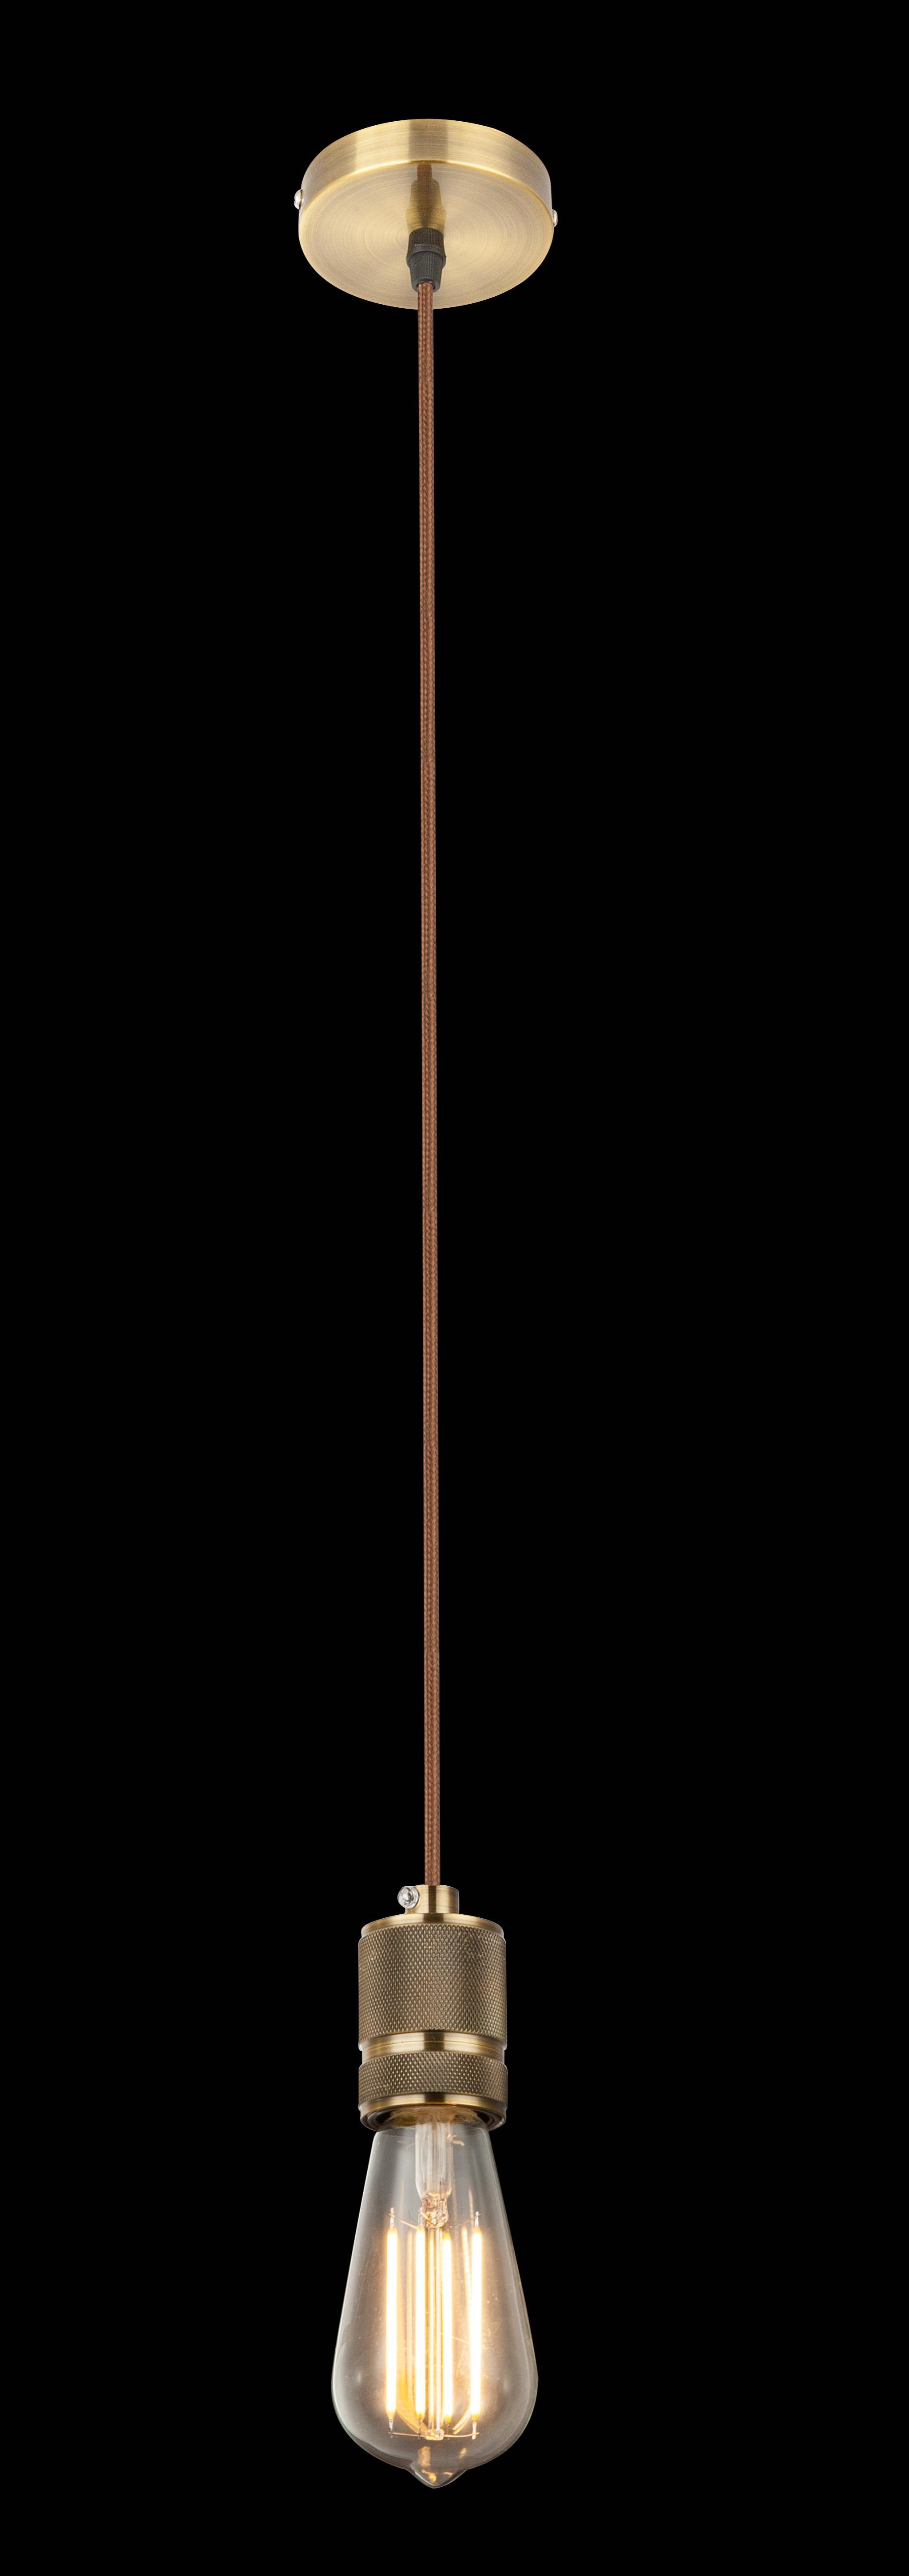 Lampada sospensione GLOBO OLIVER, in ottone anticato e antracite,H 150 cm, lampadina NON inclusa